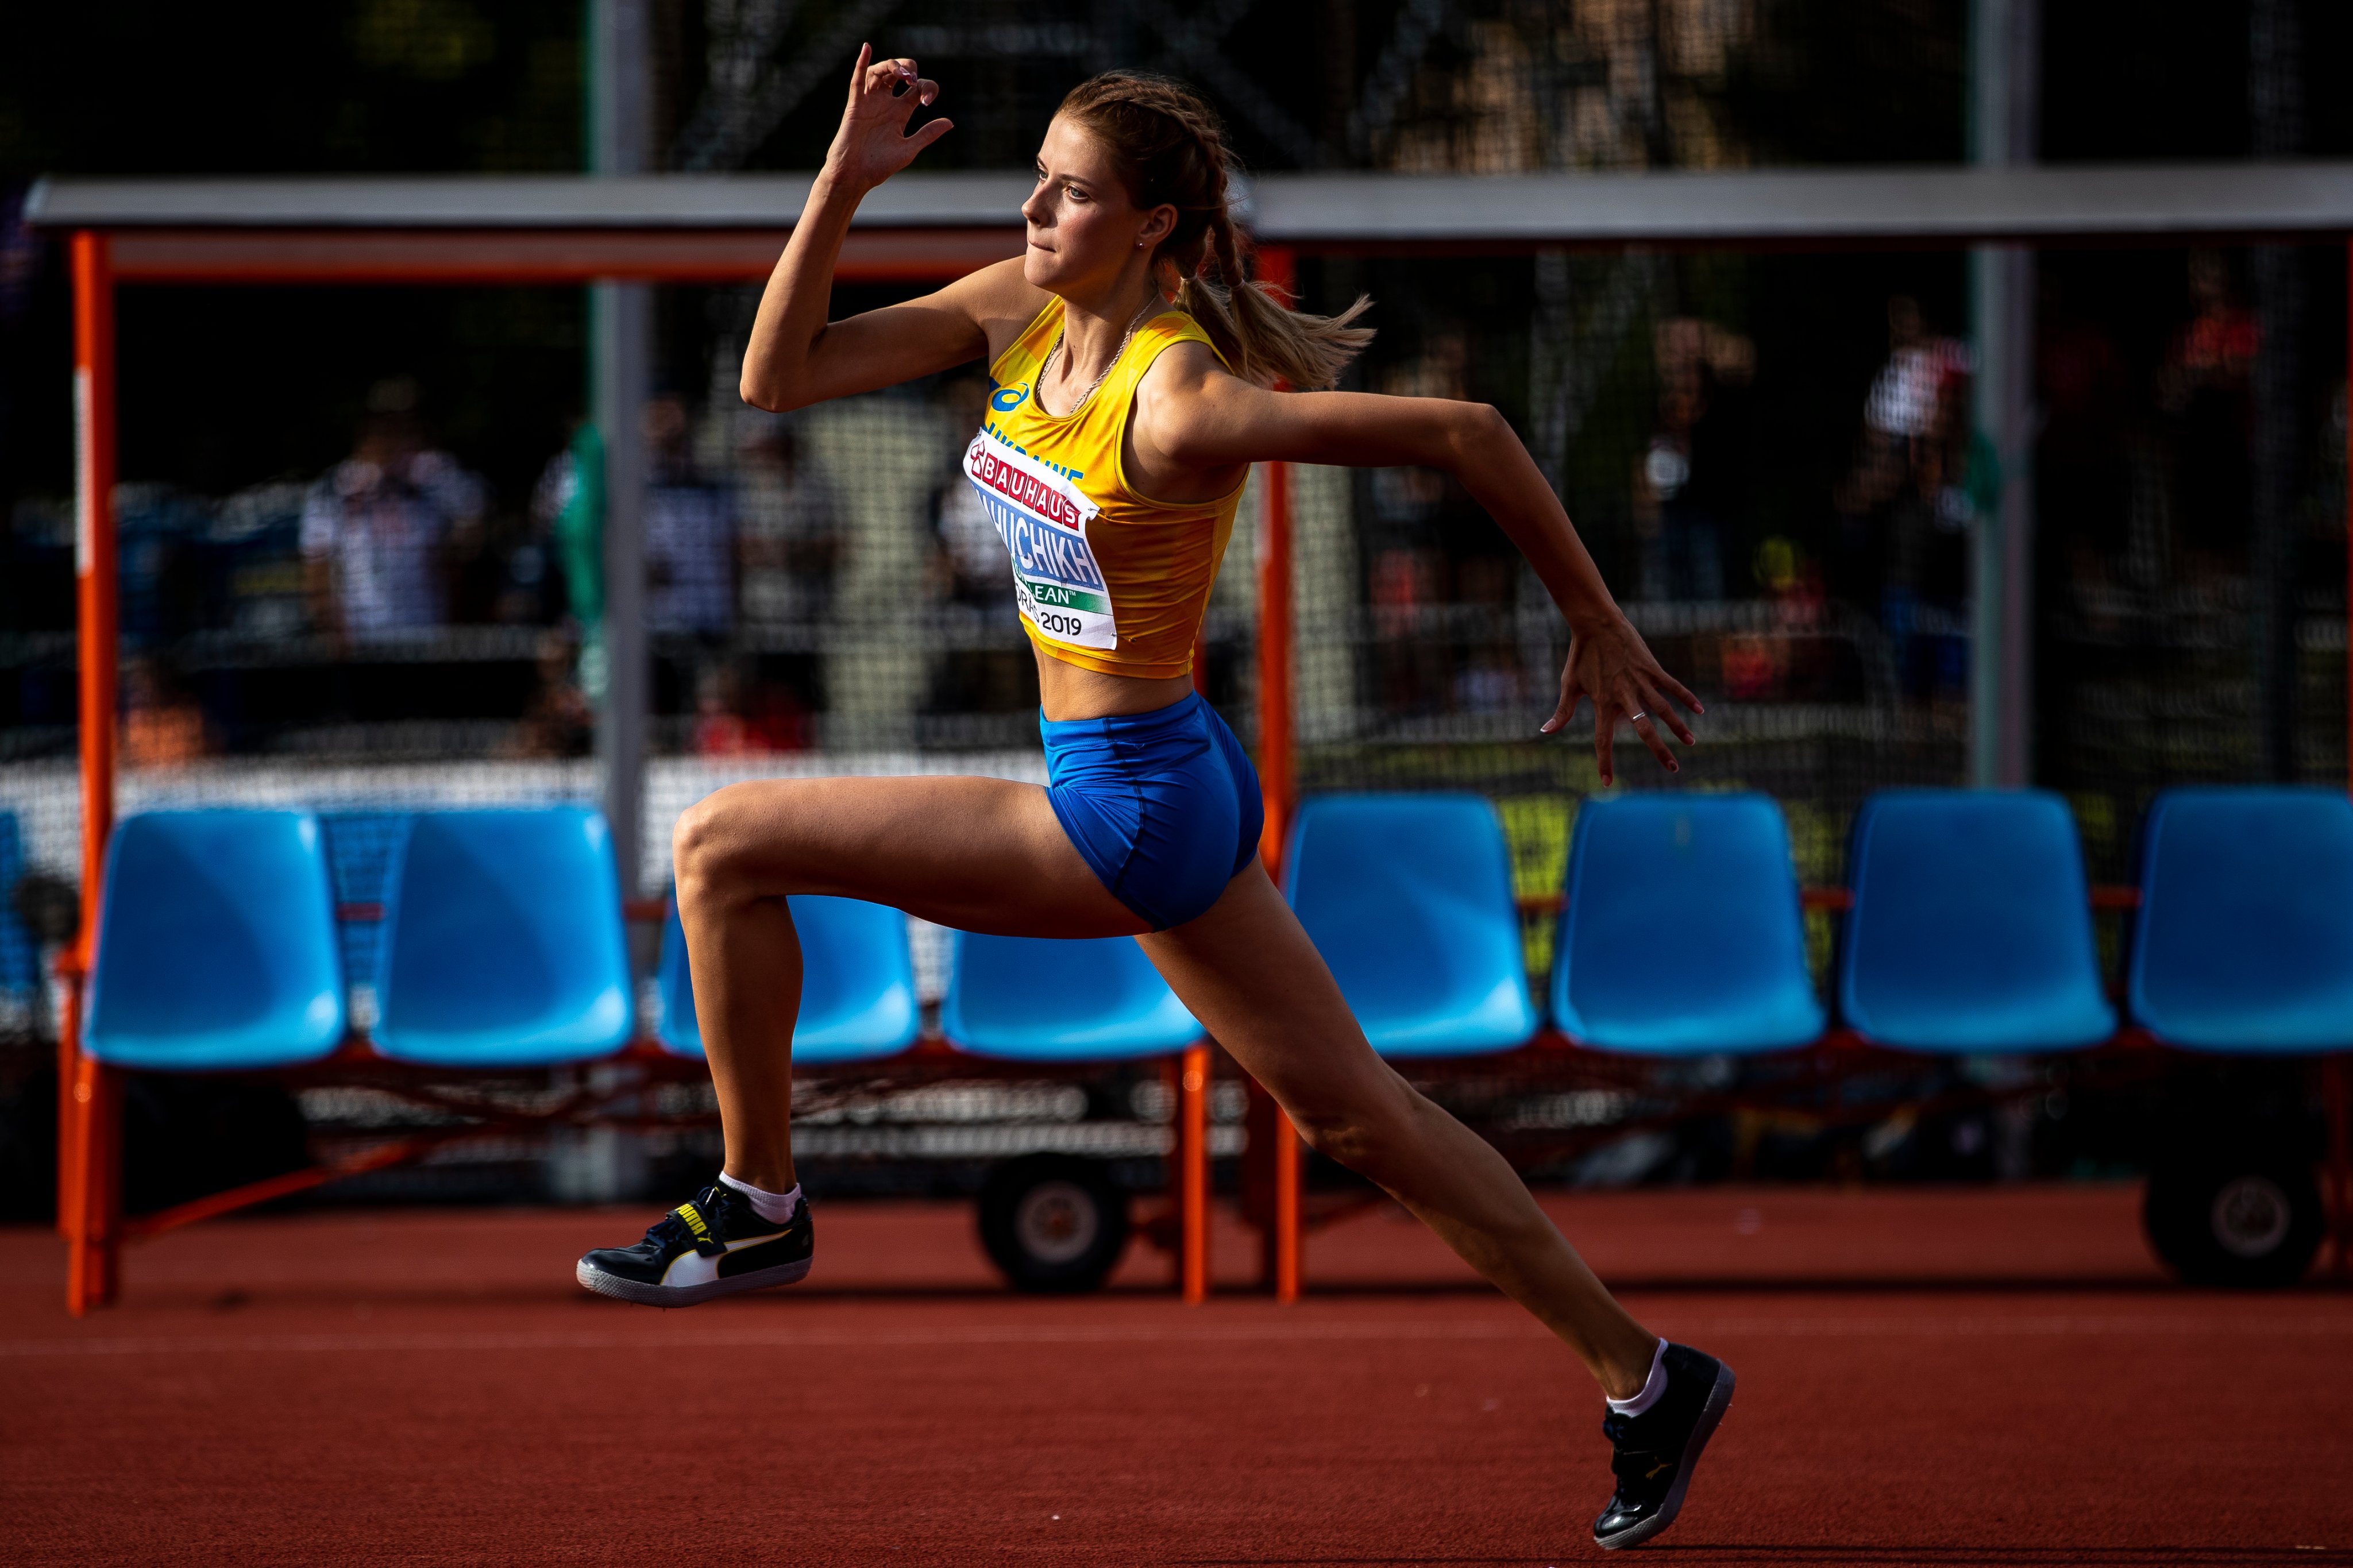 2米01破世界青年纪录乌克兰美女跳高首秀无敌高出中国009米